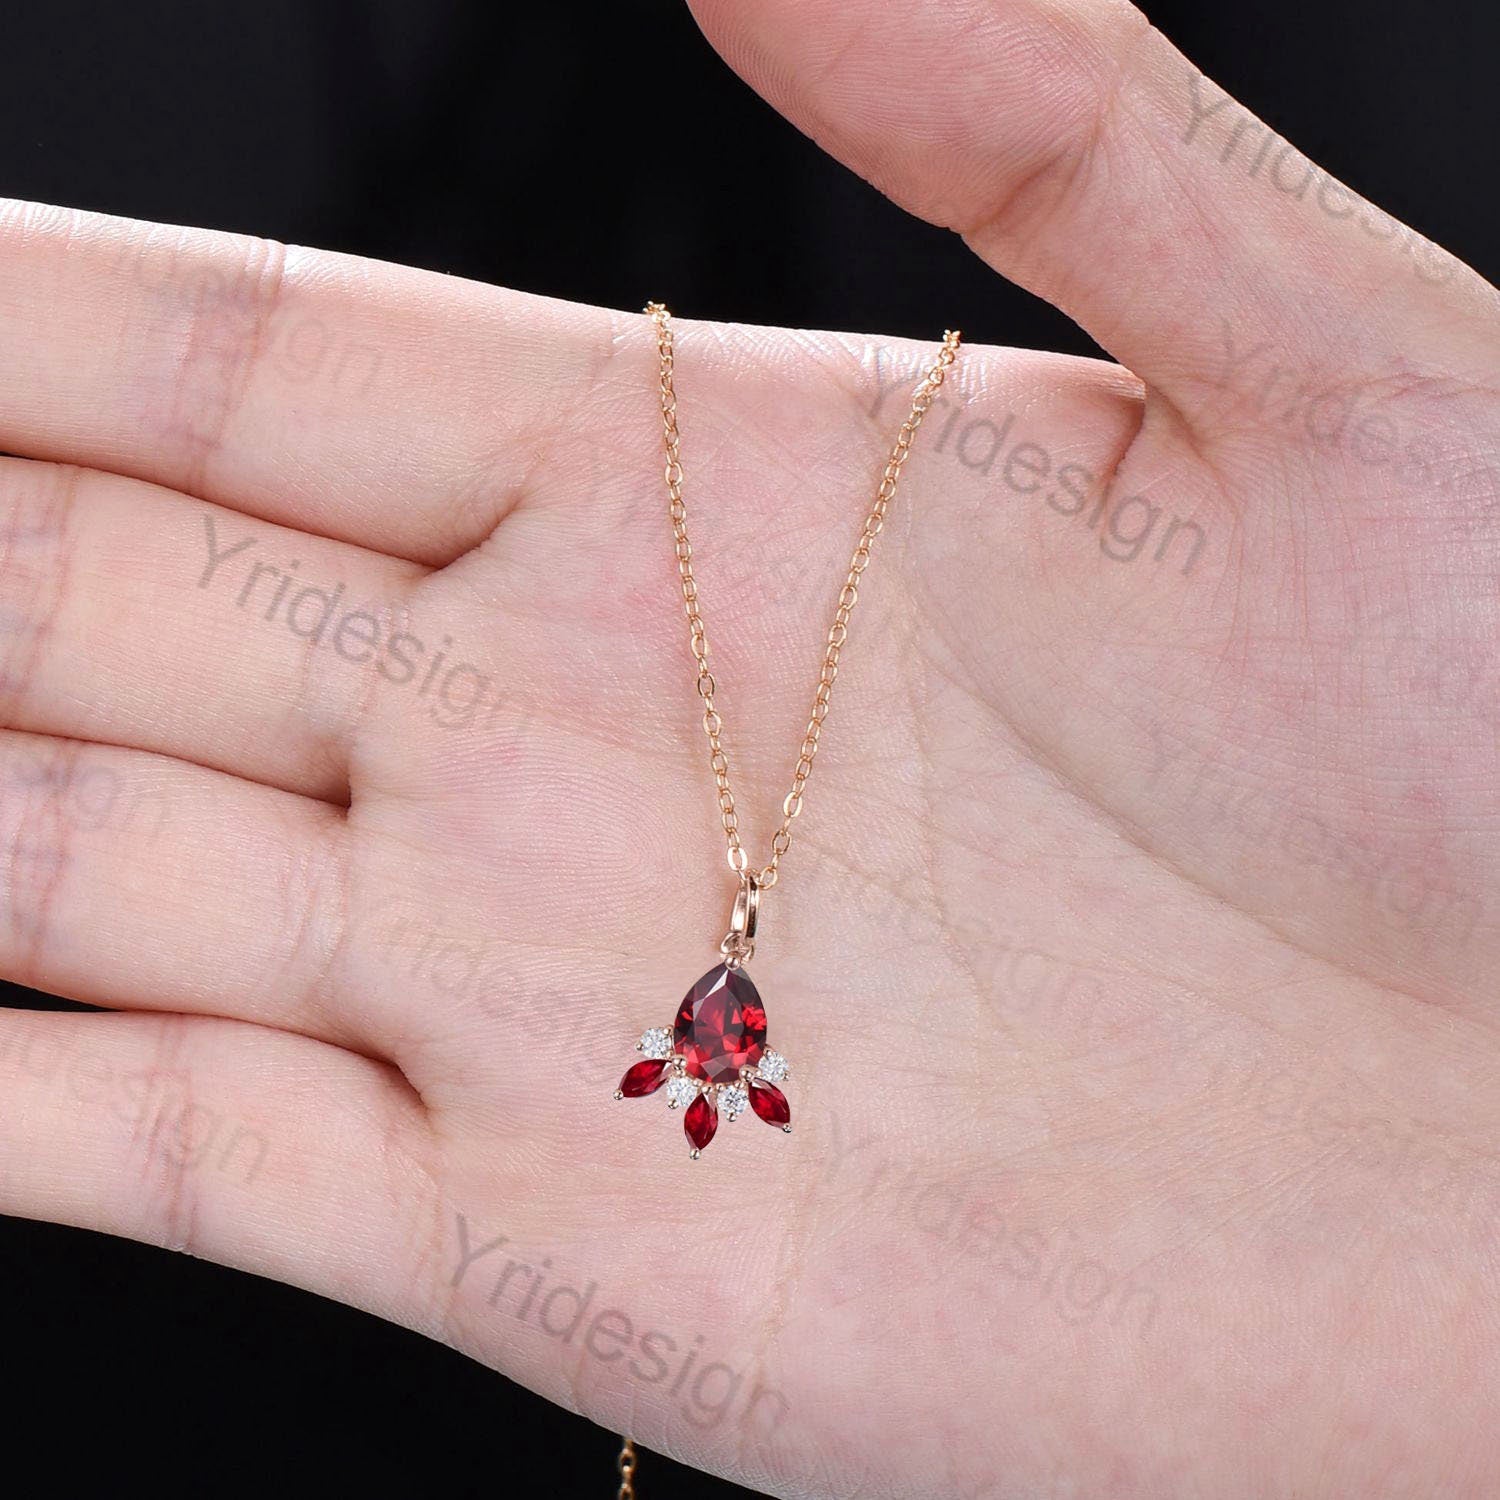 Margaret Solow Jewelry | Teardrop Ruby + 14k Gold Drop Necklace |  Firecracker